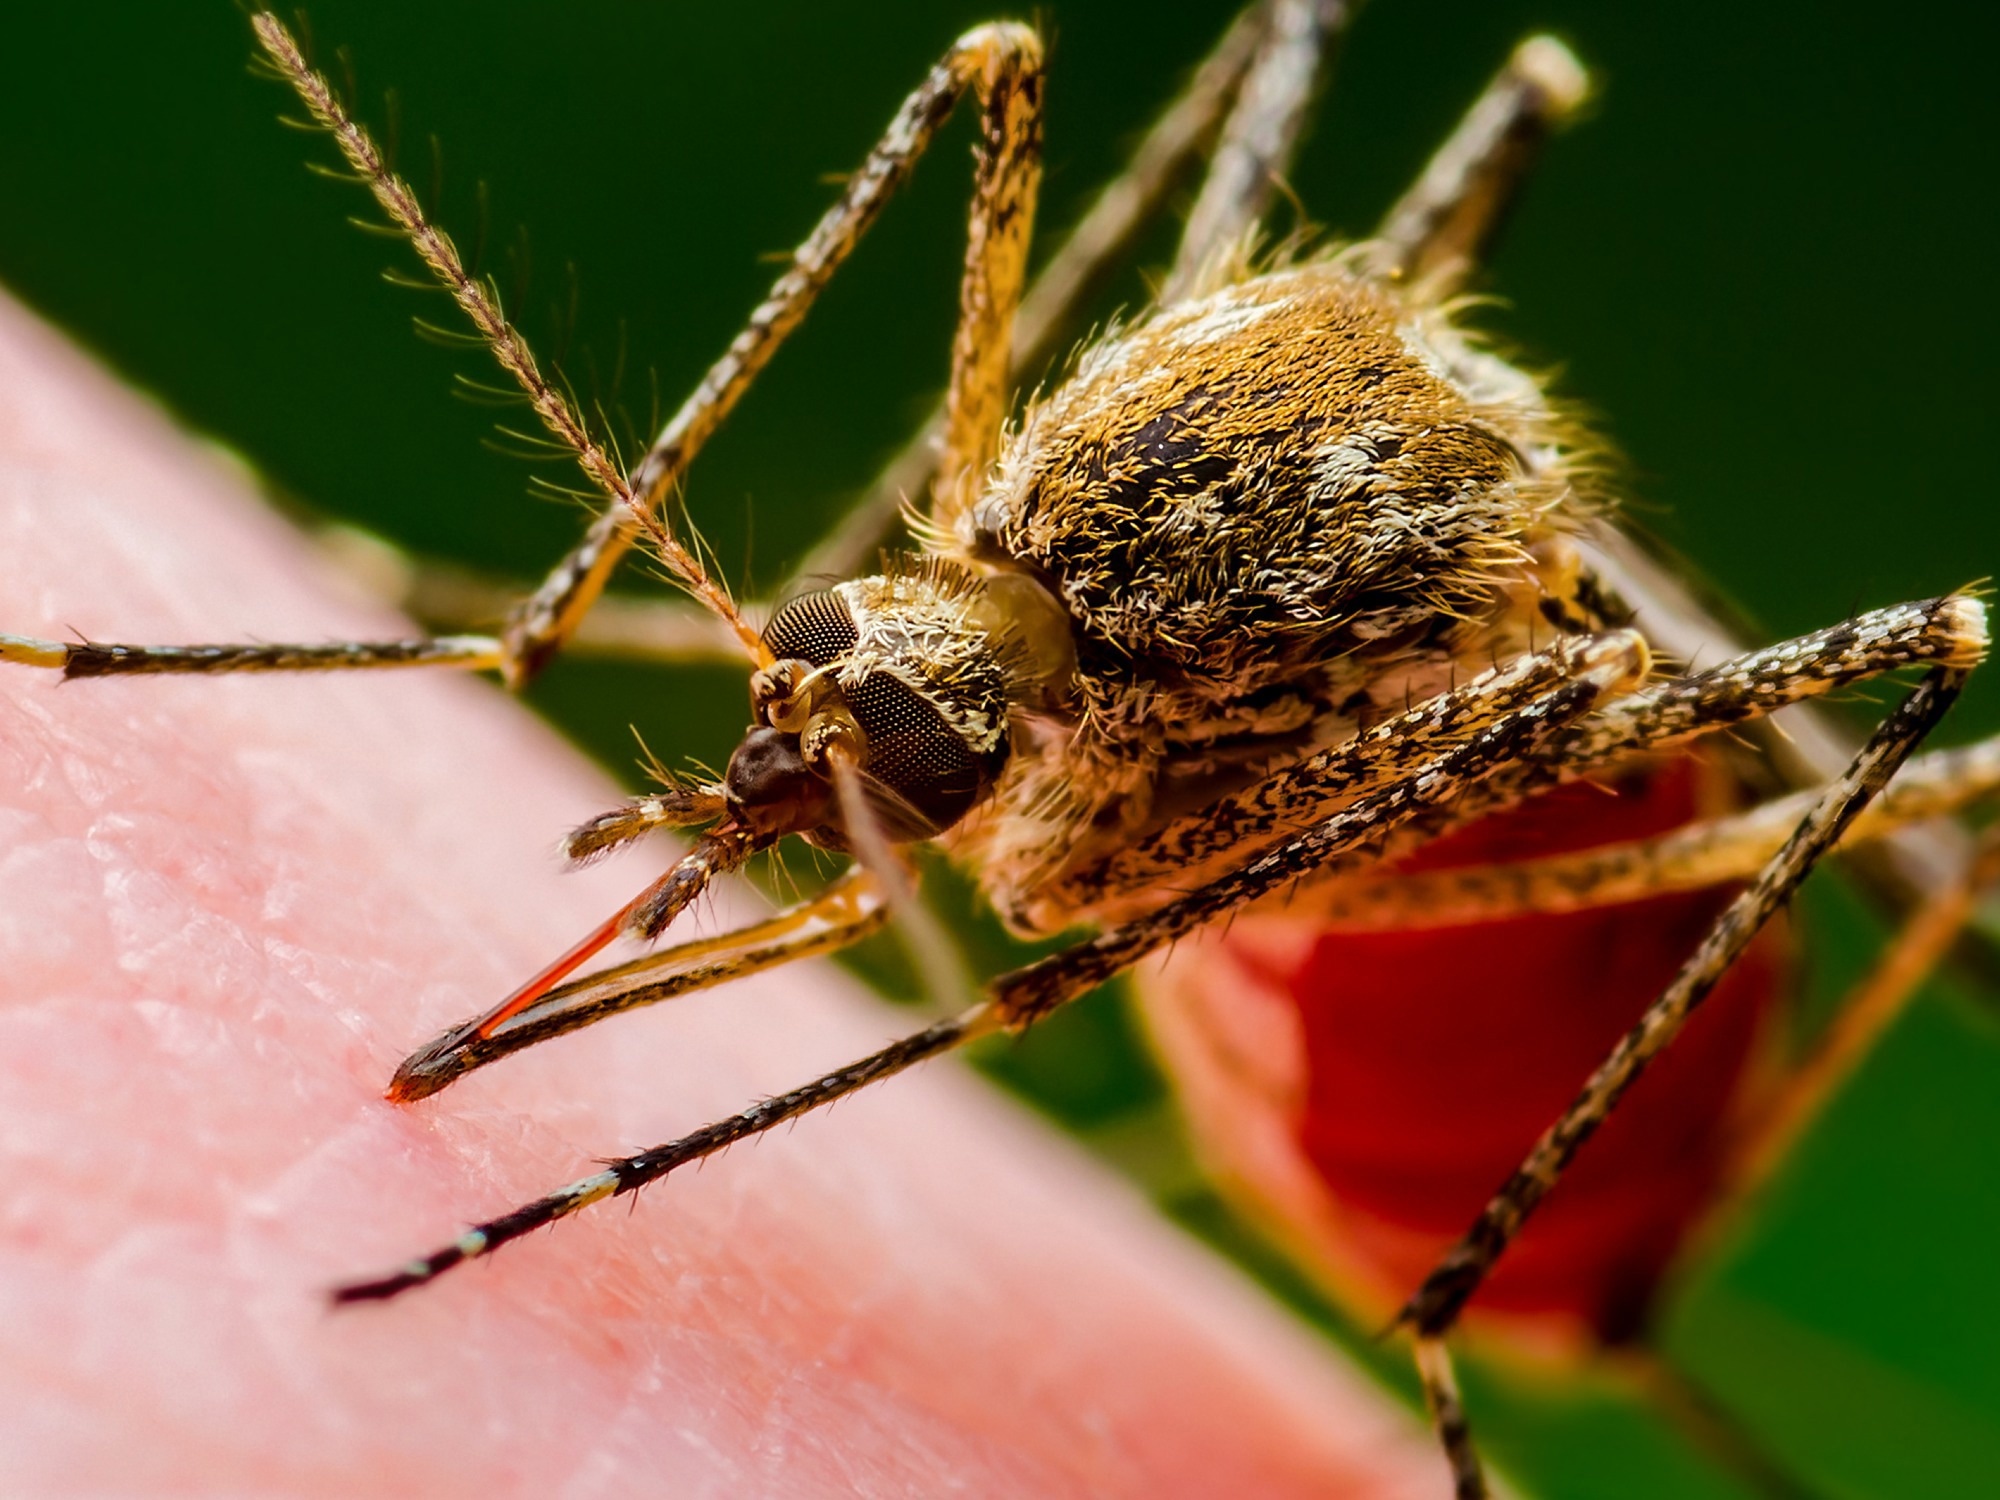 Étude : Risque accru de maladies transmises par les moustiques dans l'UE/EEE suite à la propagation des espèces d'Aedes.  Crédit d'image : nechaevkon/Shutterstock.com